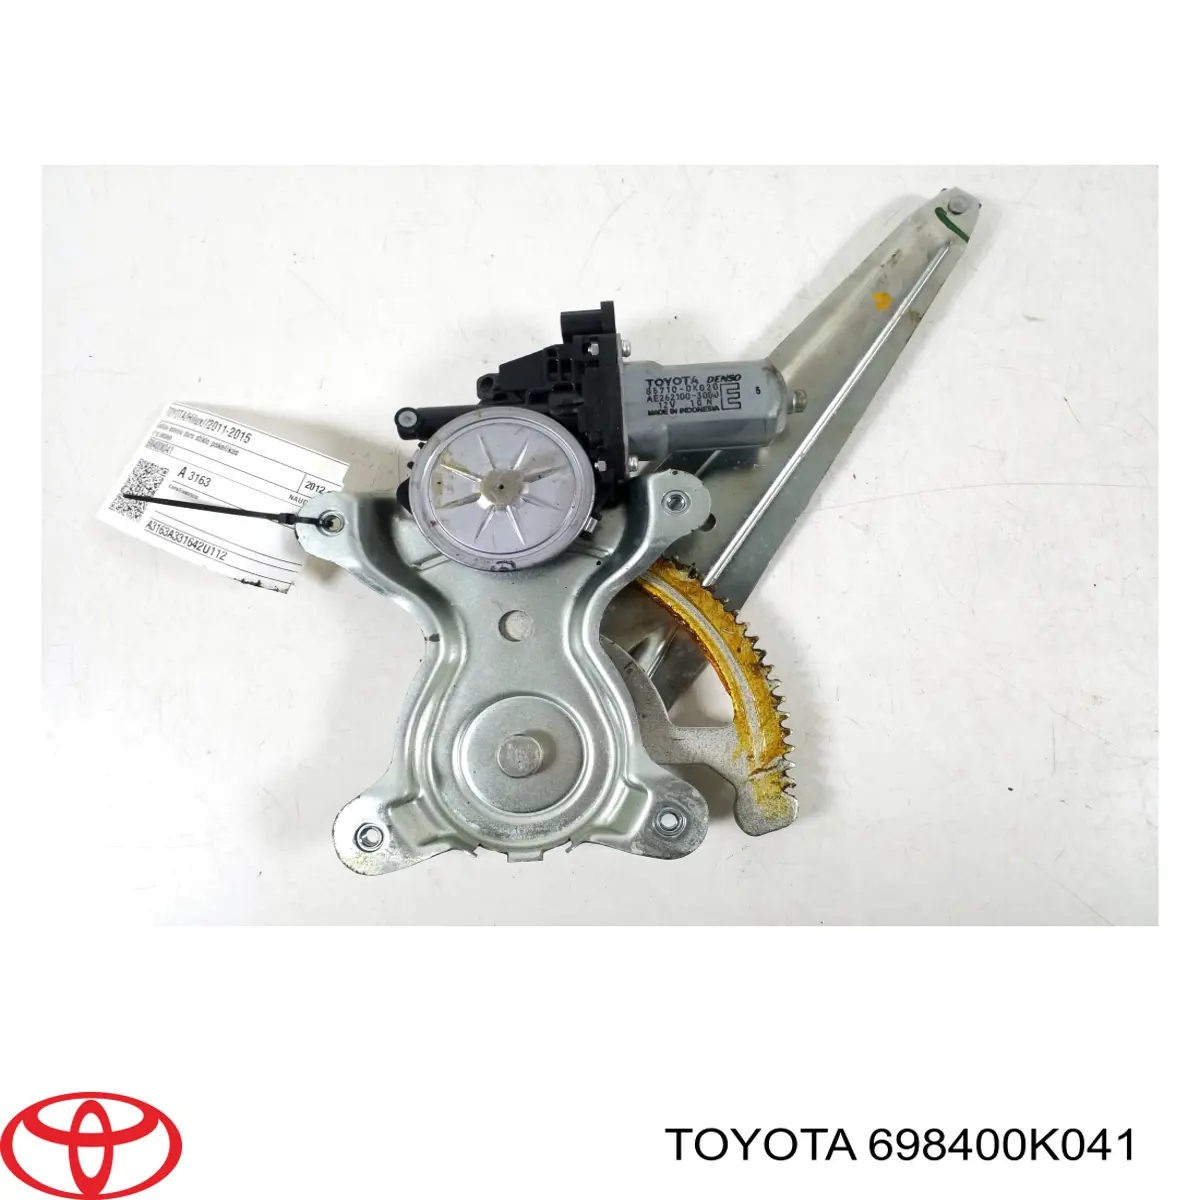 Mecanismo de acionamento de vidro da porta traseira esquerda para Toyota Hilux (KUN25)